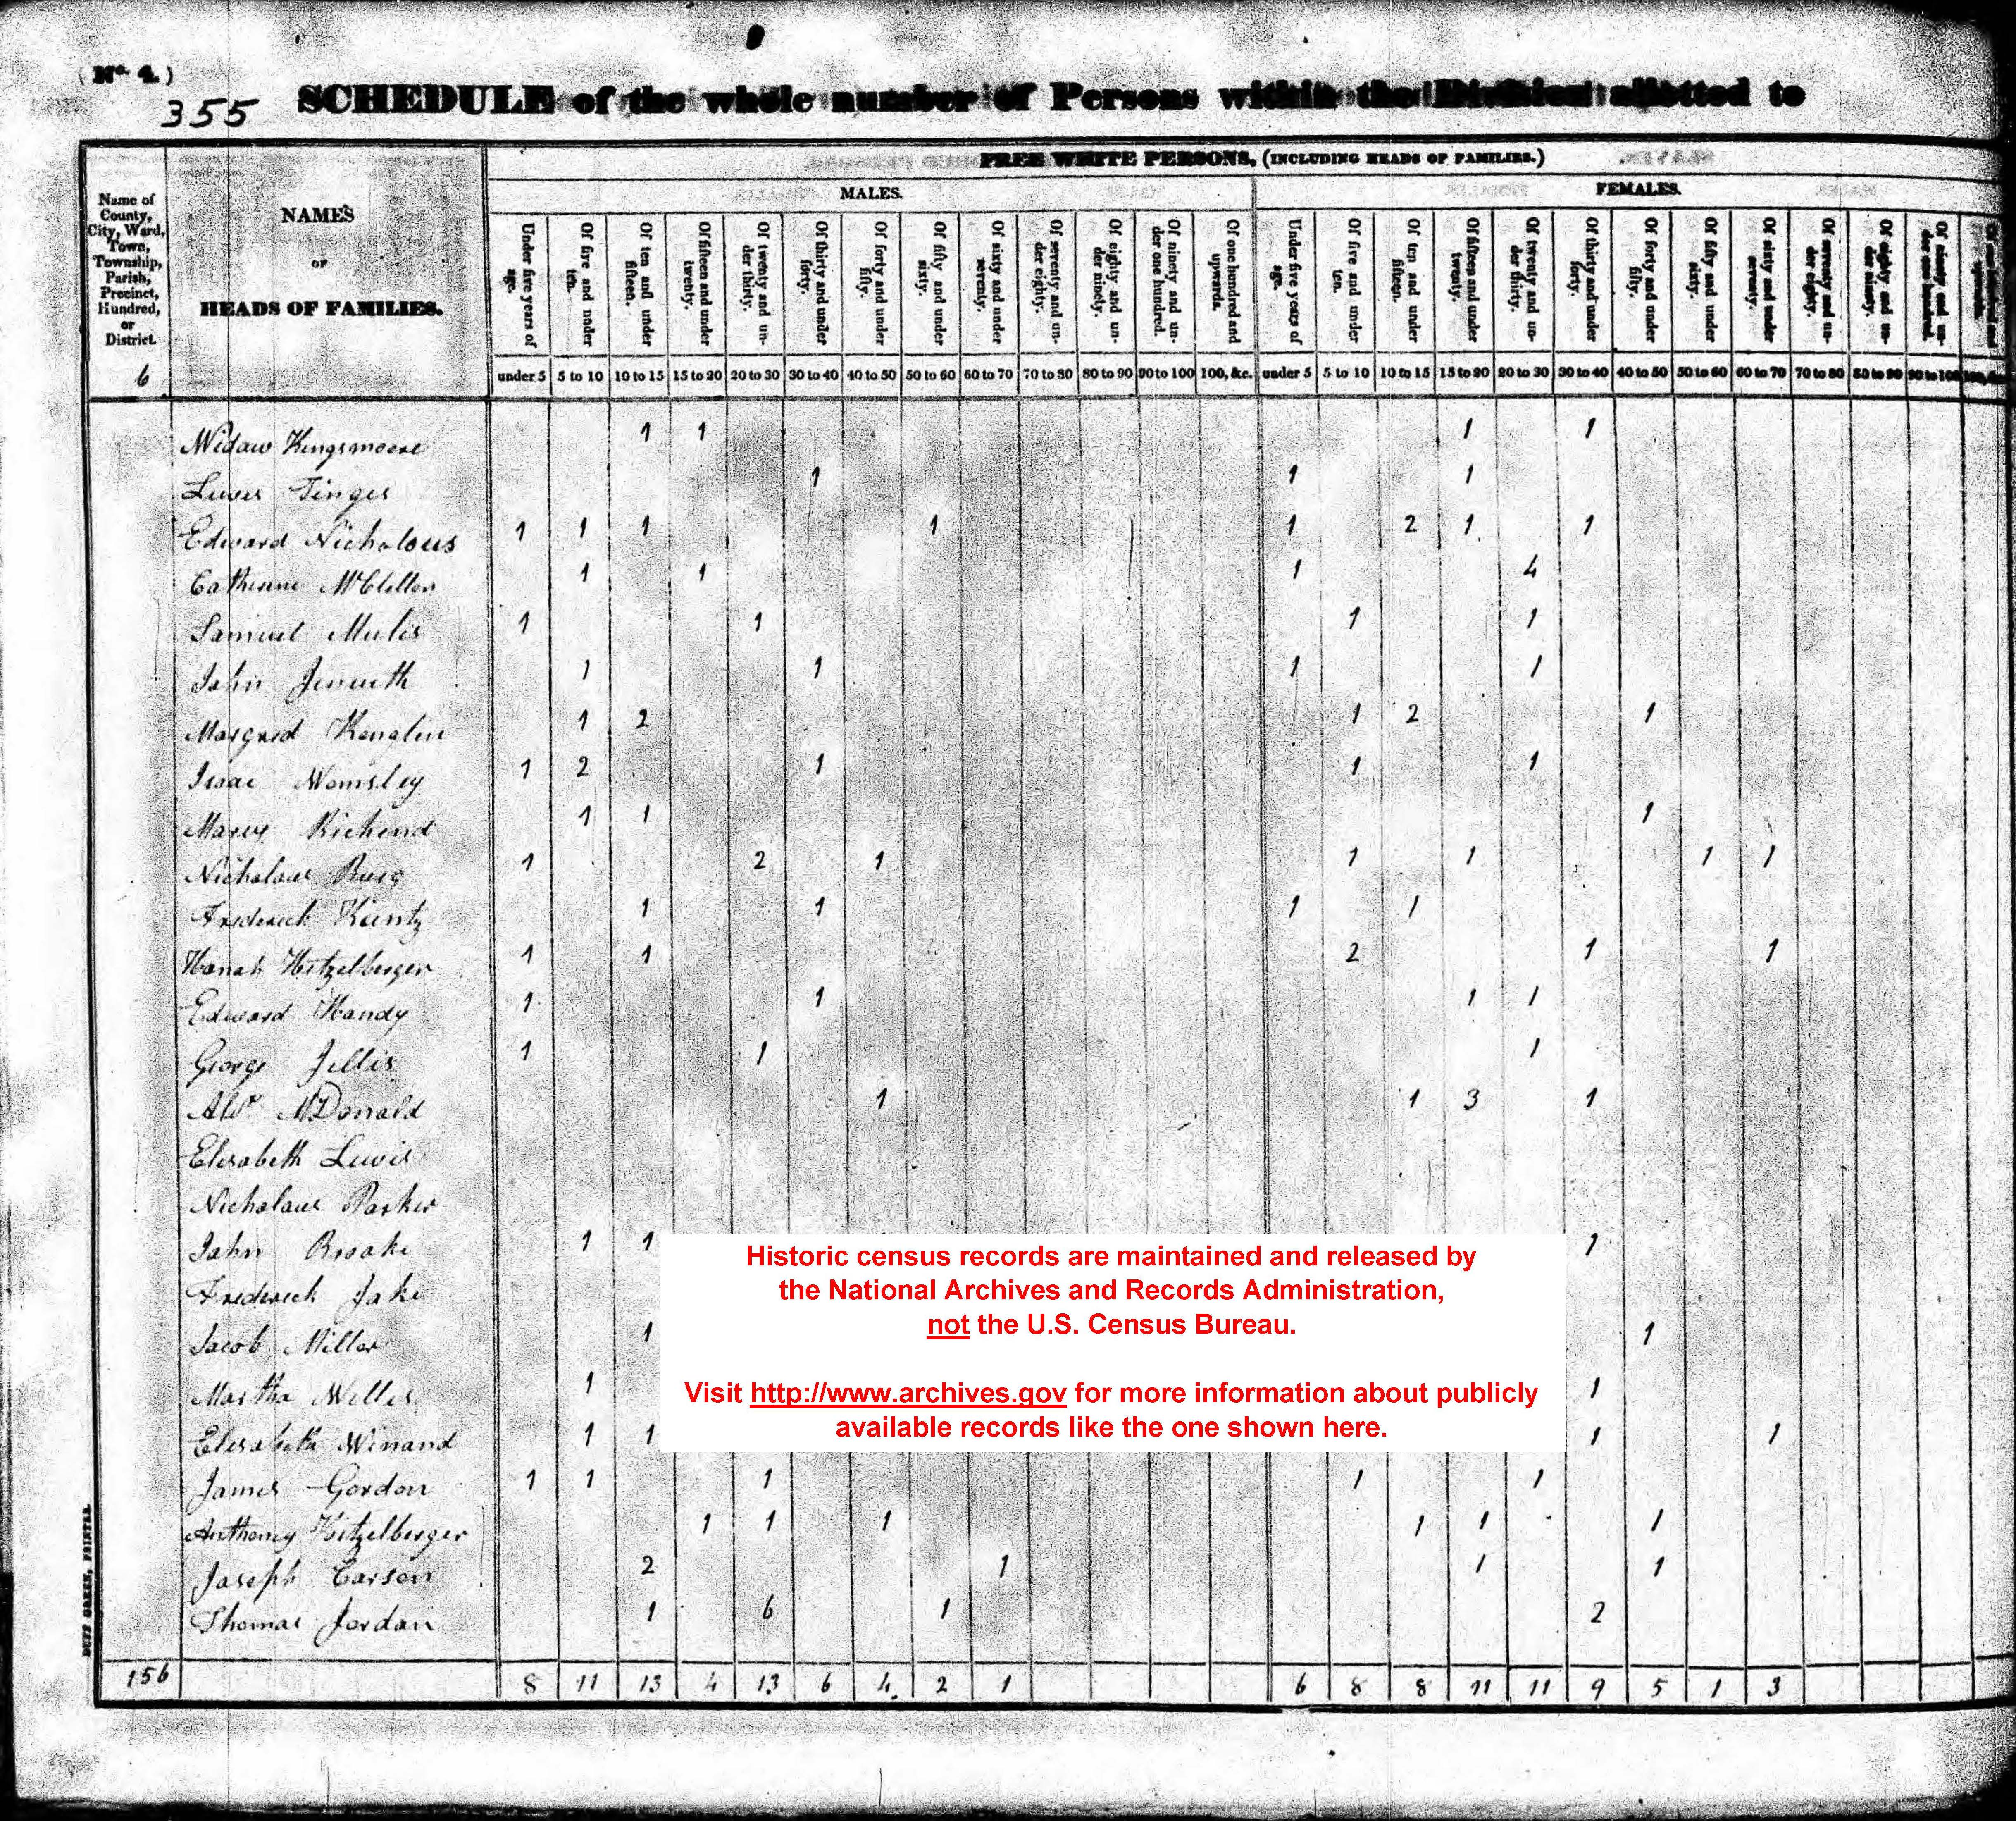 1830 Census Questionnaire